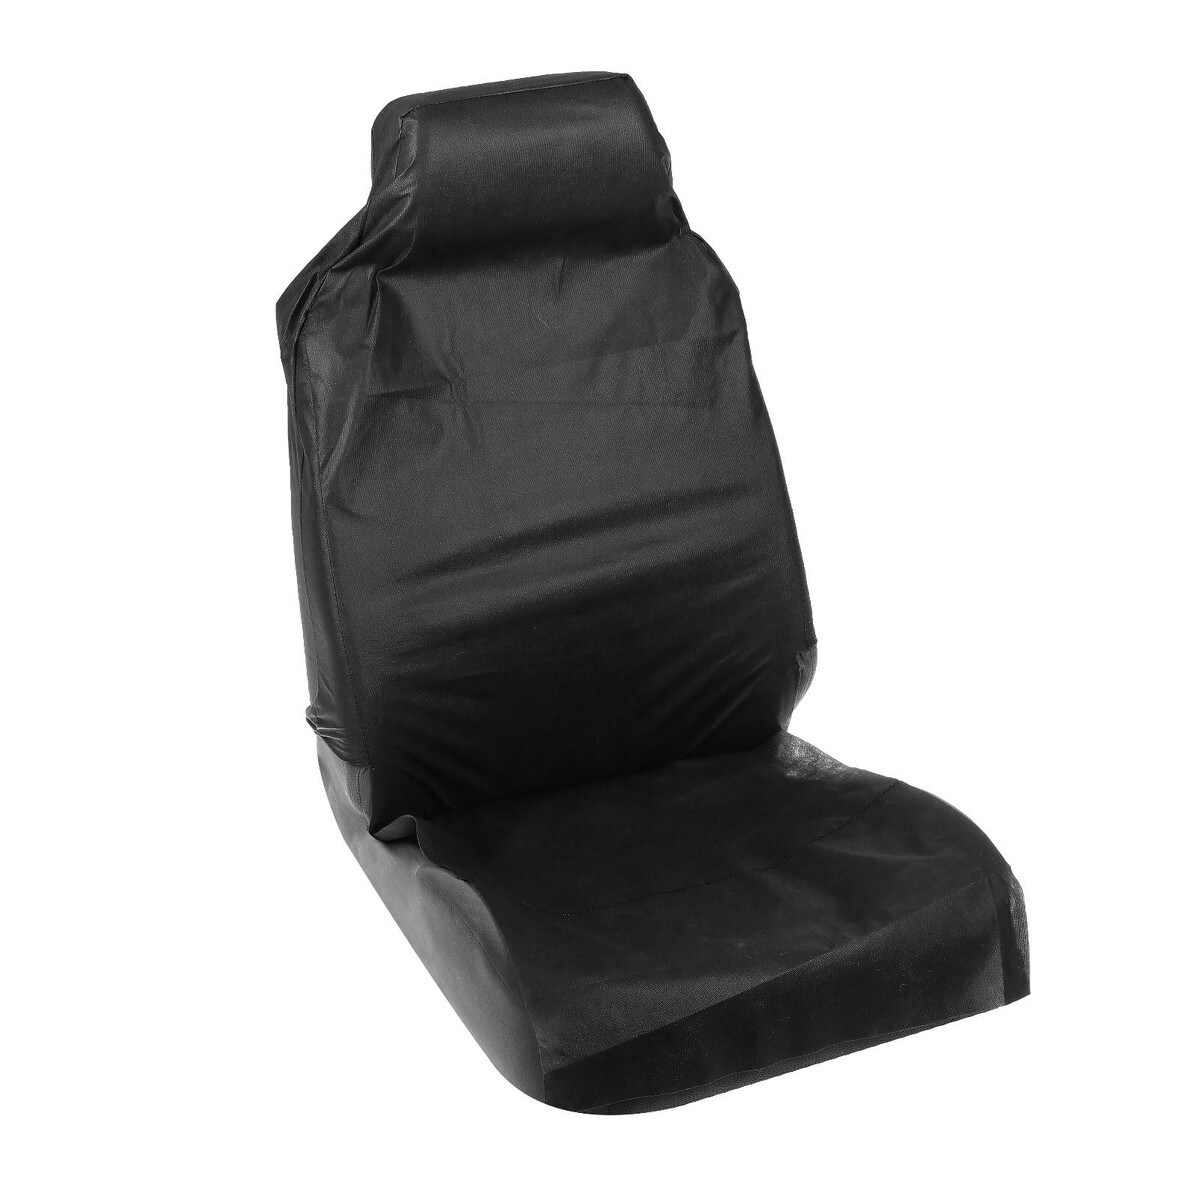 Накидка на переднее сиденье защитная, спанбонд, черная накидка органайзер torso на переднее сиденье 60×43 см пленка